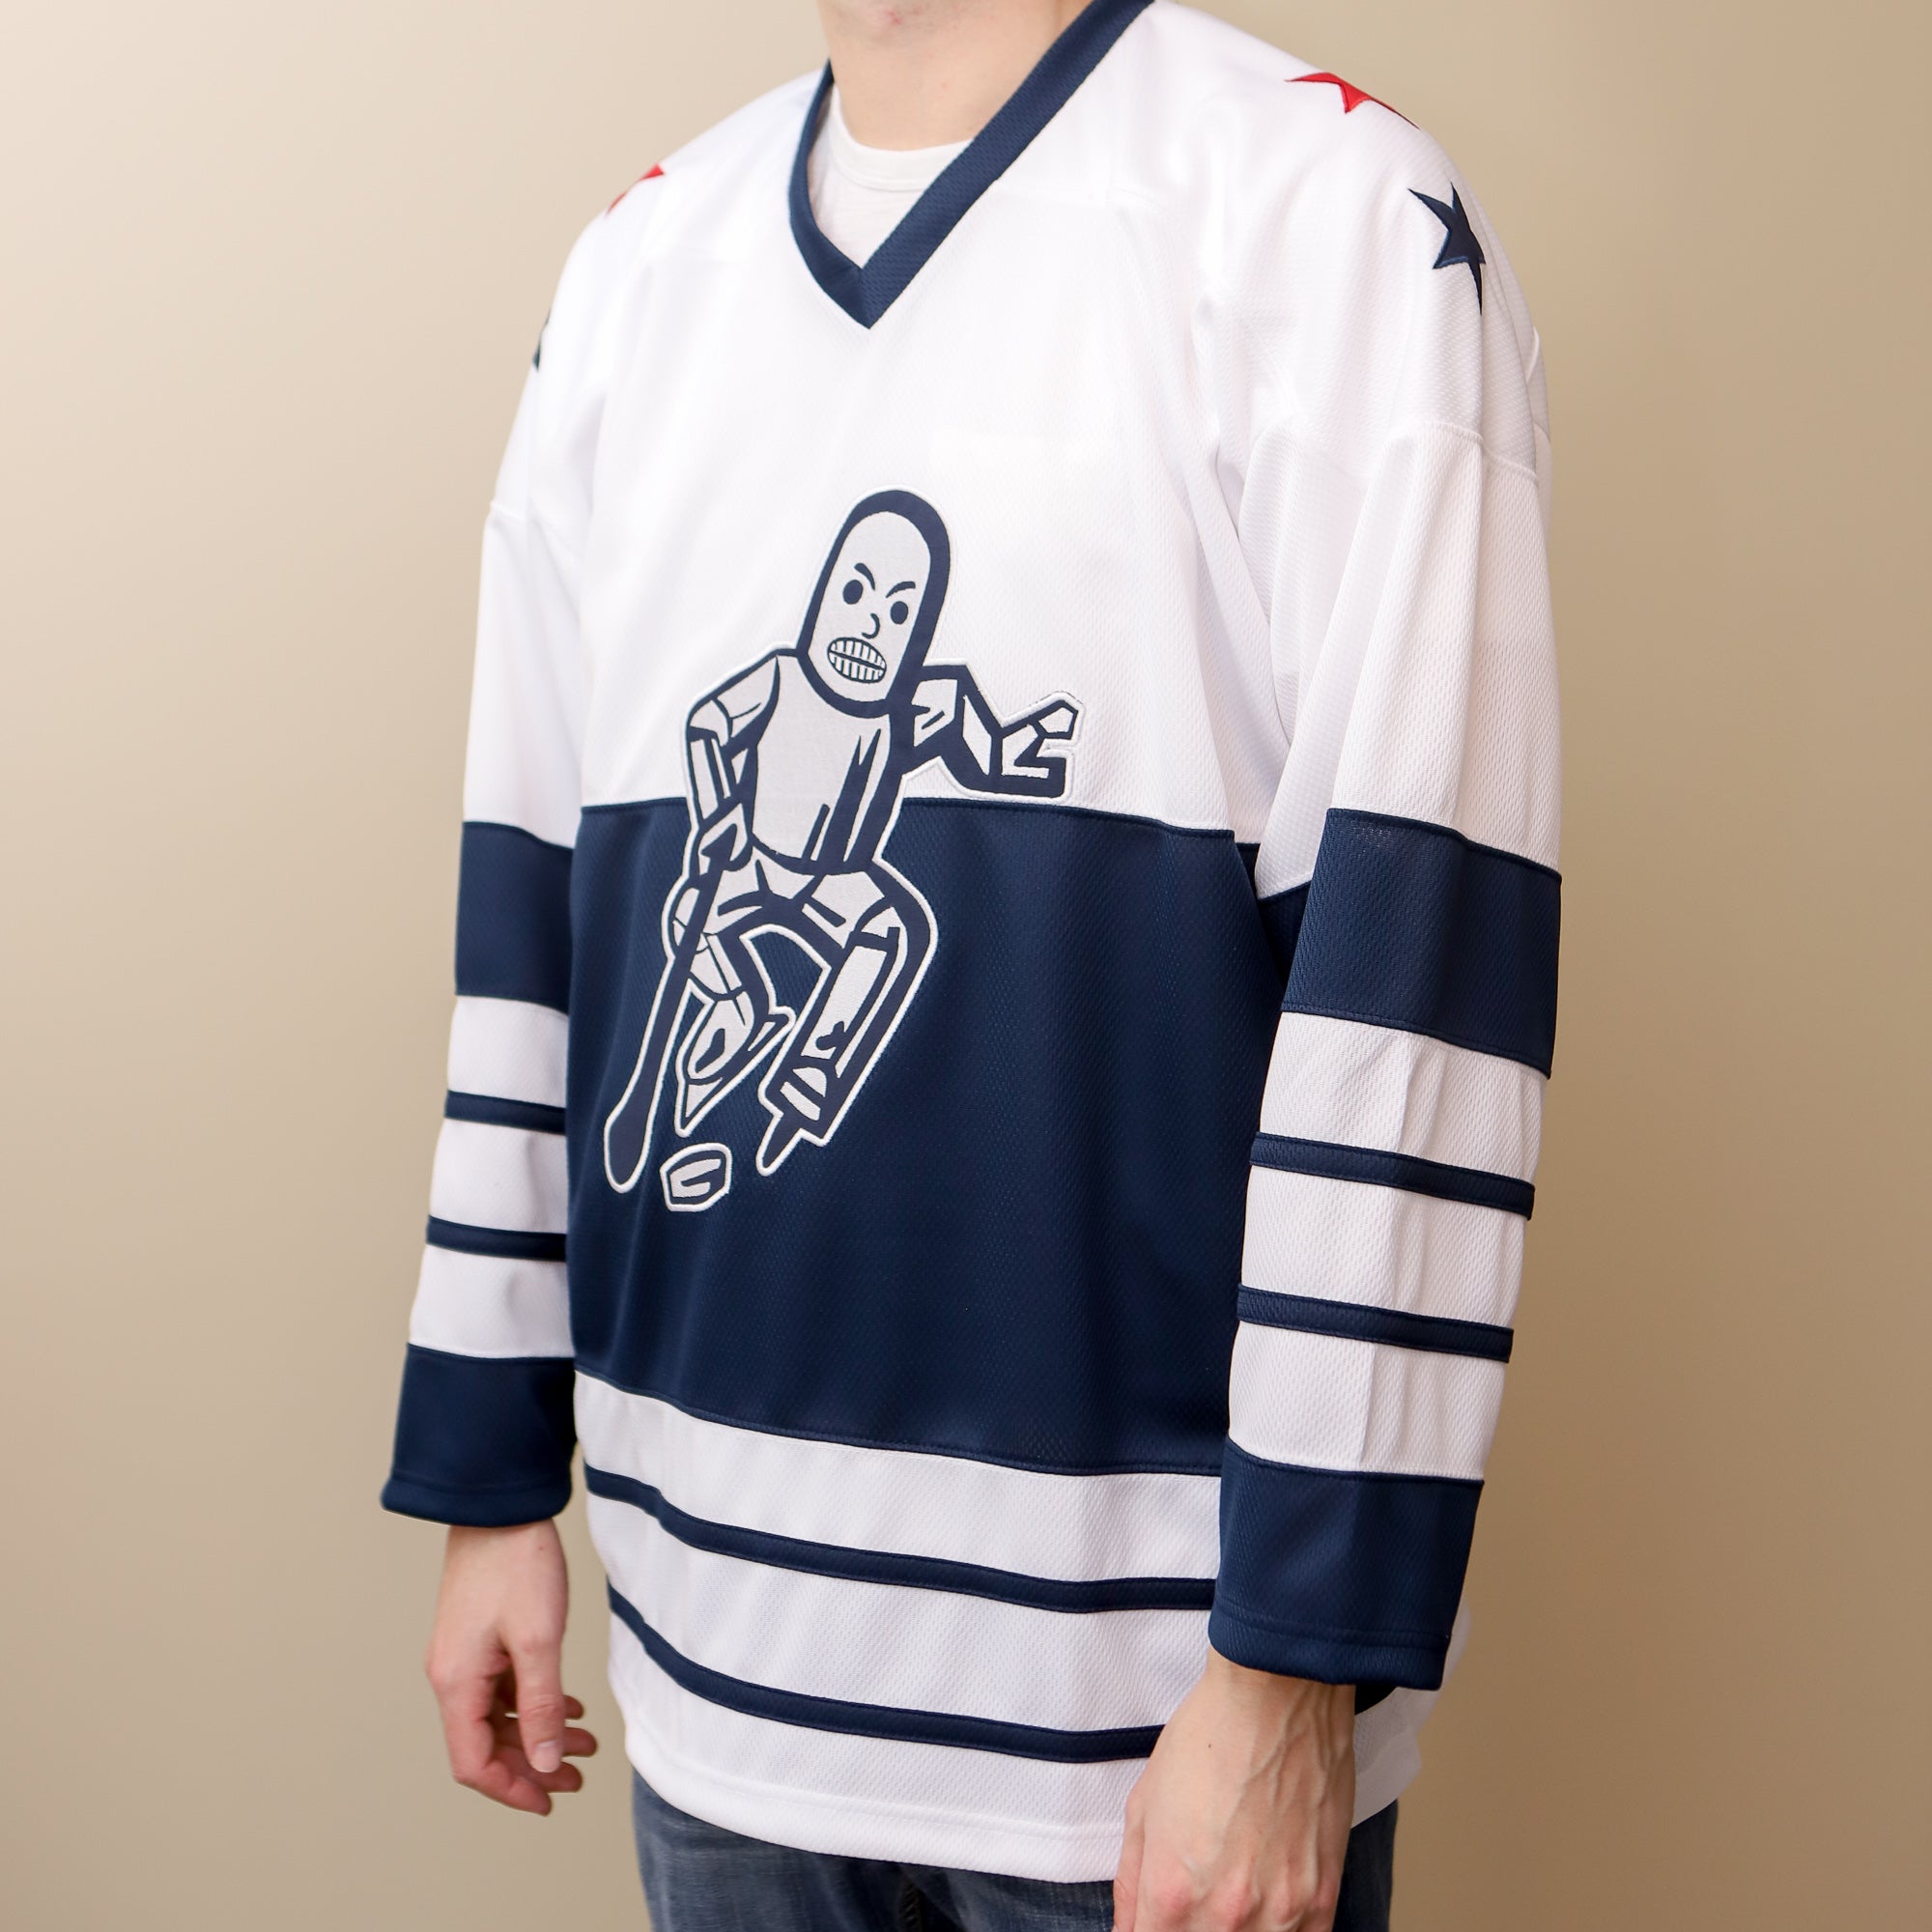 Alaska Aces Minor League Hockey Fan Jerseys for sale